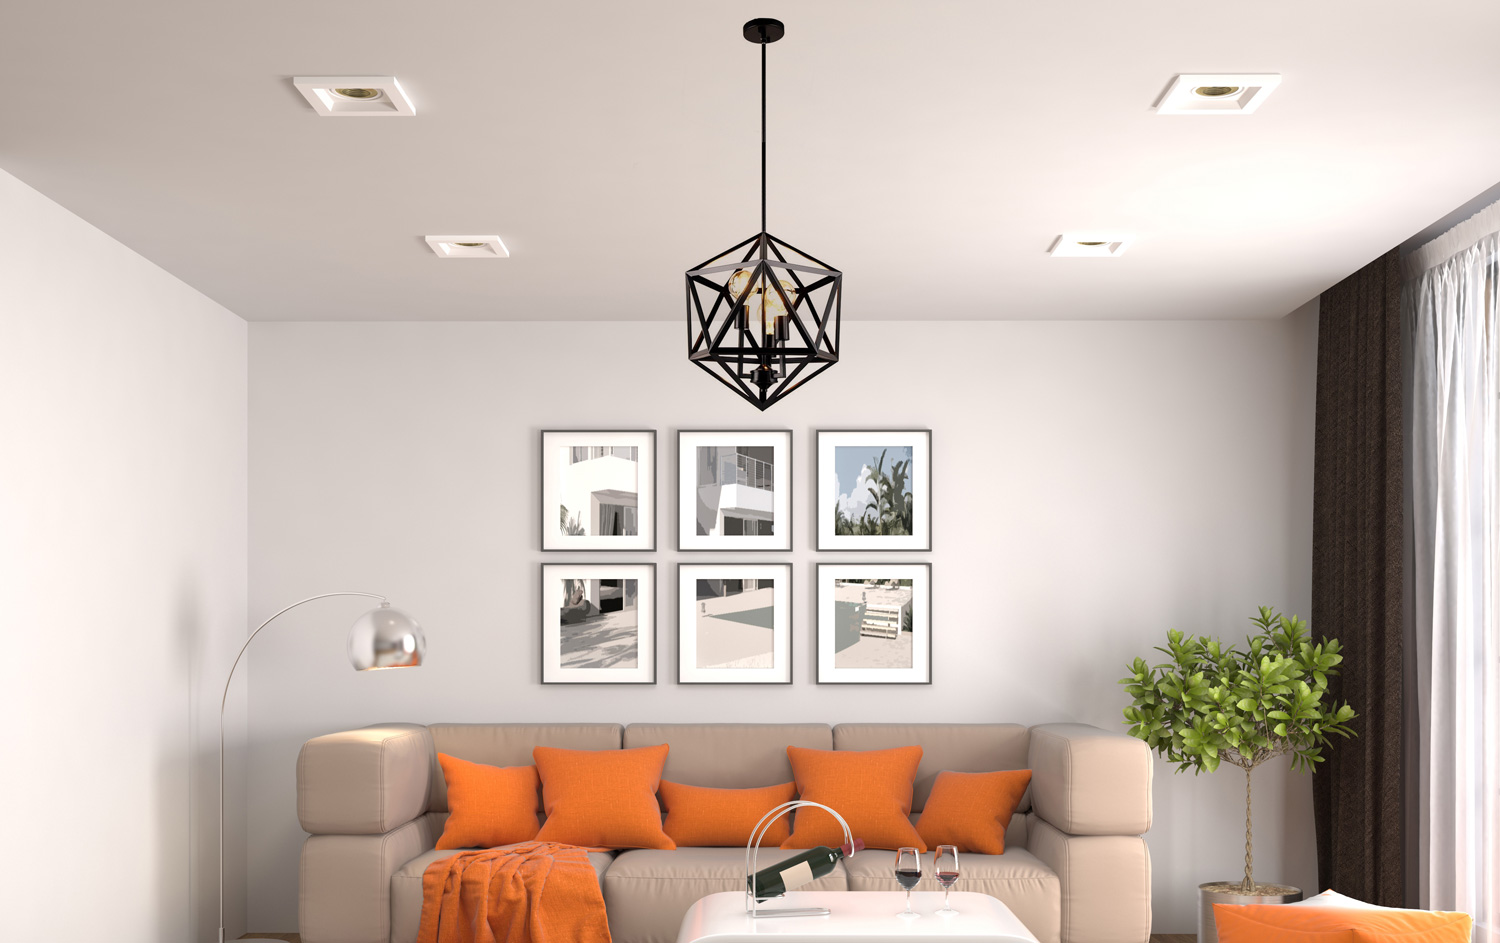 Bên cạnh những mẫu đèn trang trí phòng khách hiện đại, đèn trang trí phòng khách đơn giản cũng được nhiều người sử dụng. Với thiết kế tối giản, chất liệu đa dạng, những chiếc đèn đơn giản này giúp tạo không gian đẹp và ấm cúng cho mọi gia đình.